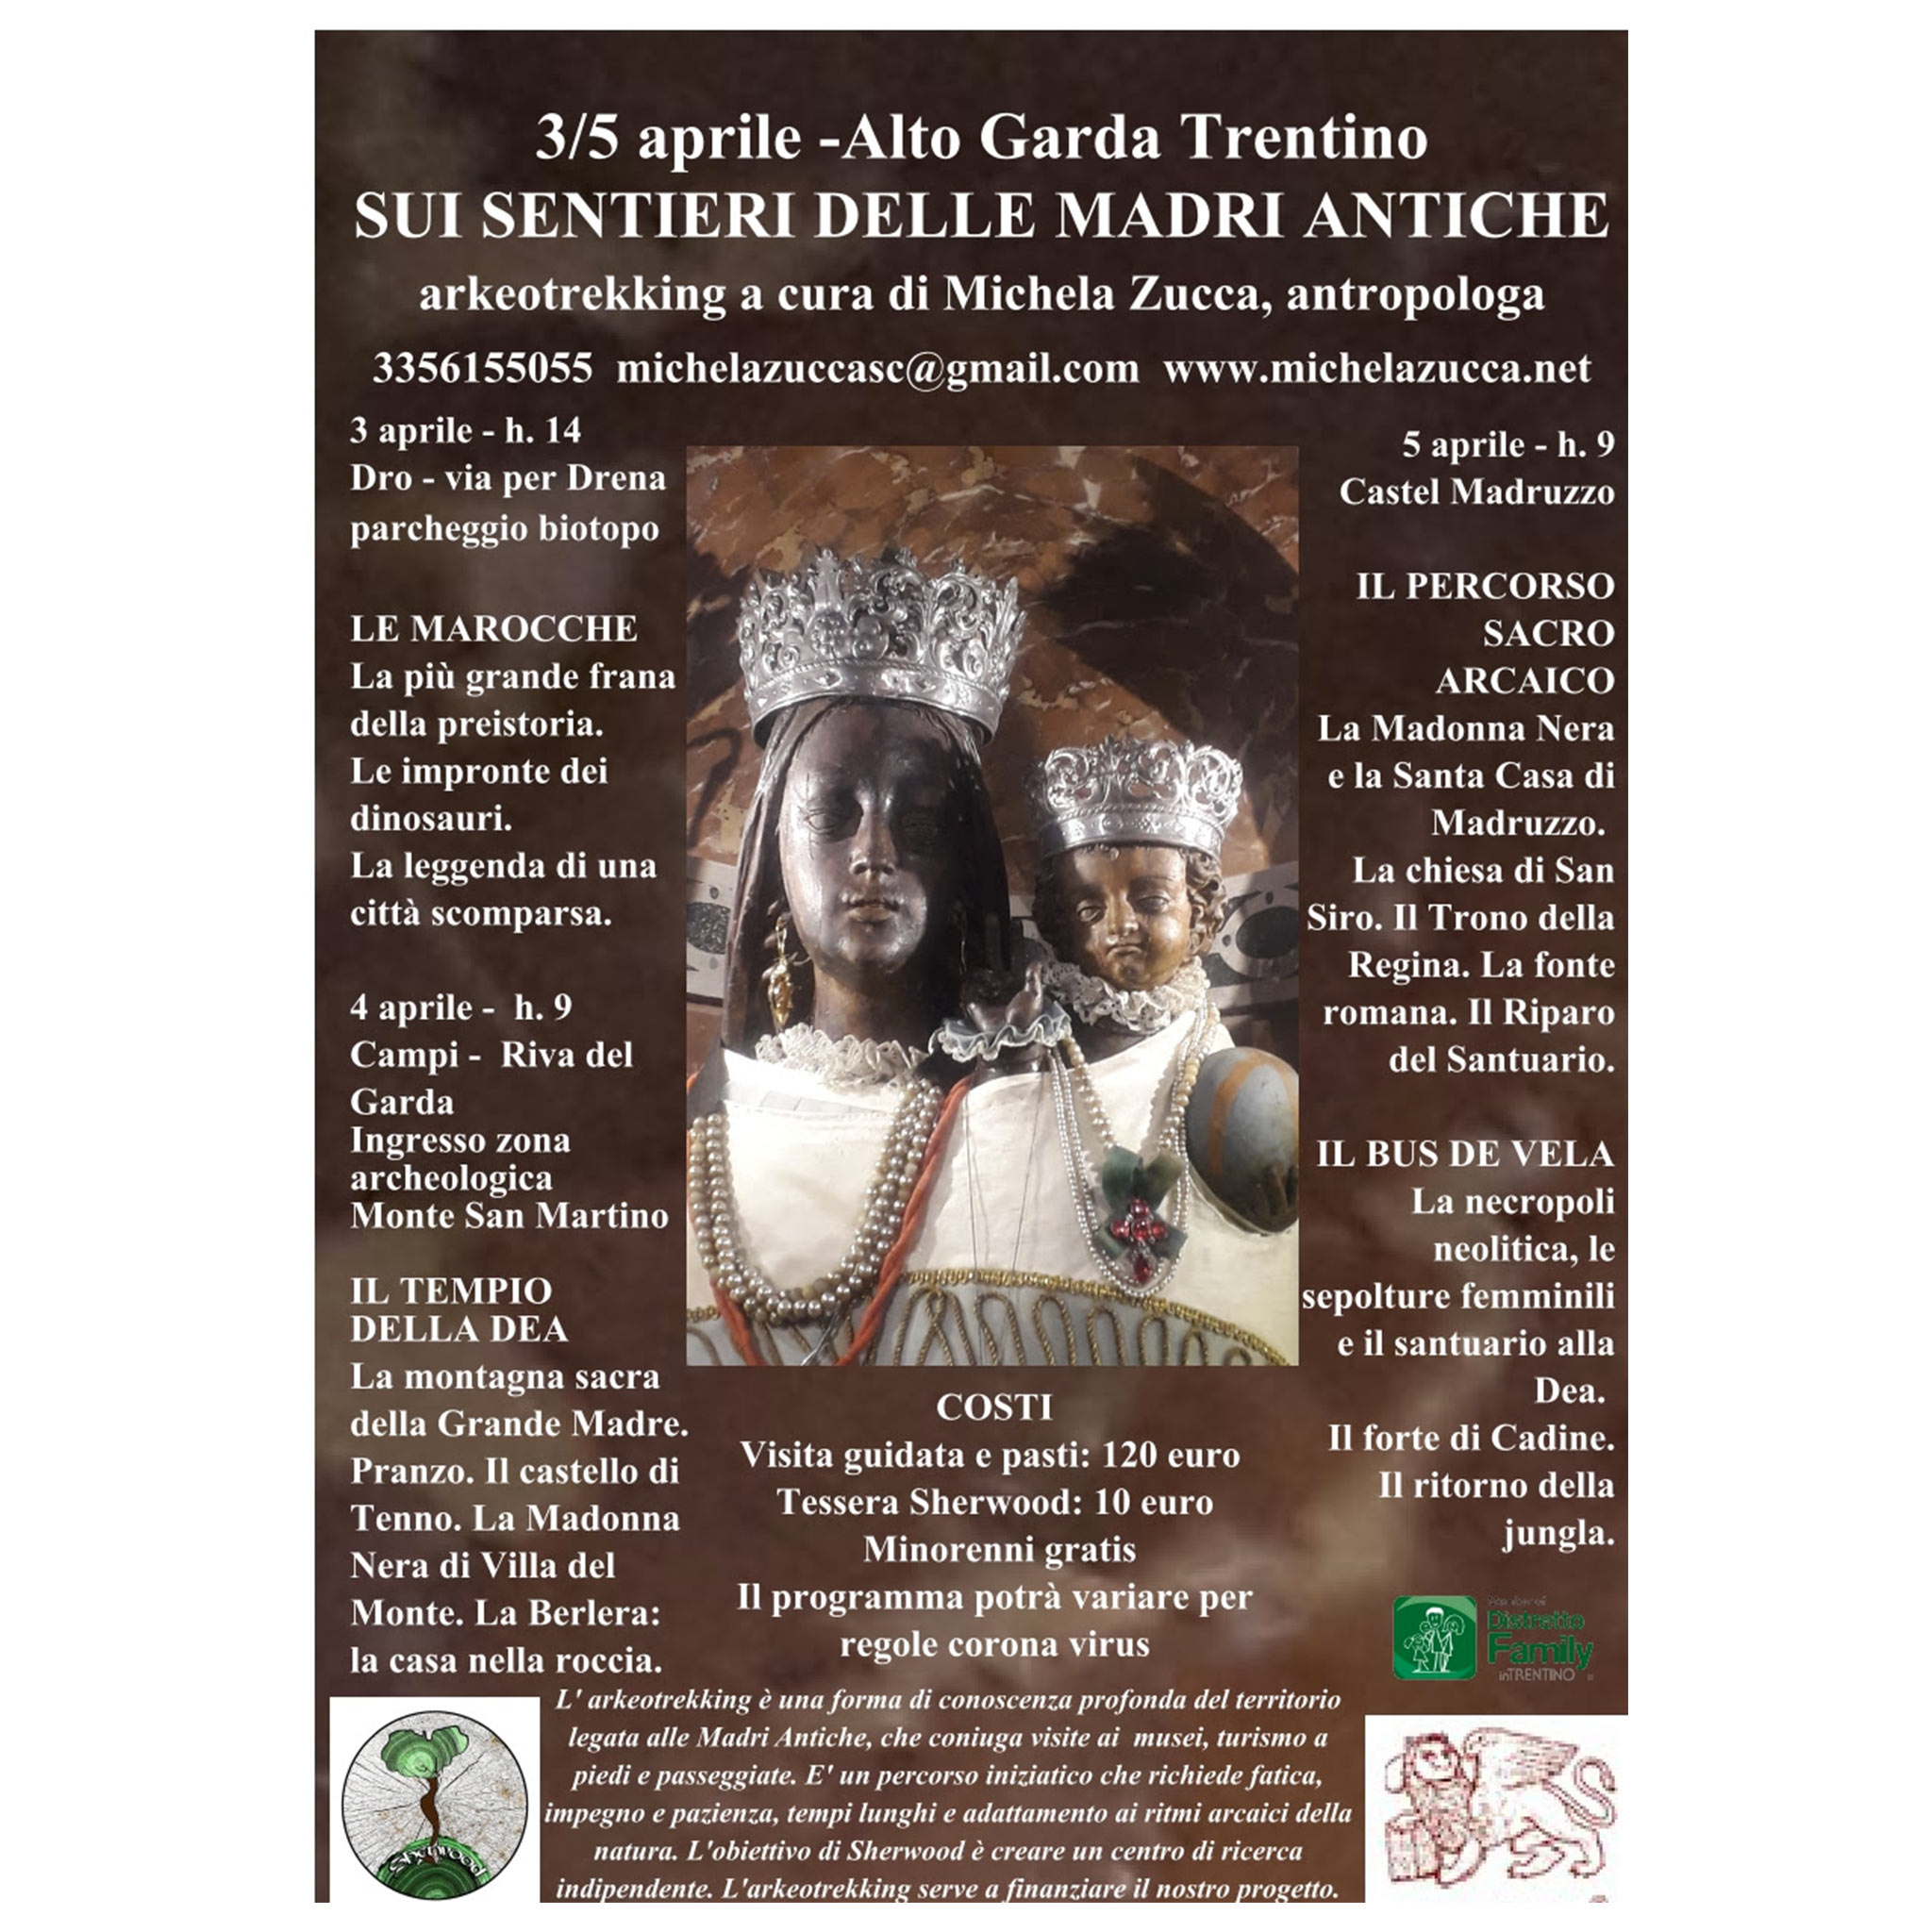 Dal 3 al 5 aprile - Sui sentieri delle madri antiche - Arkeotrekking Trentino